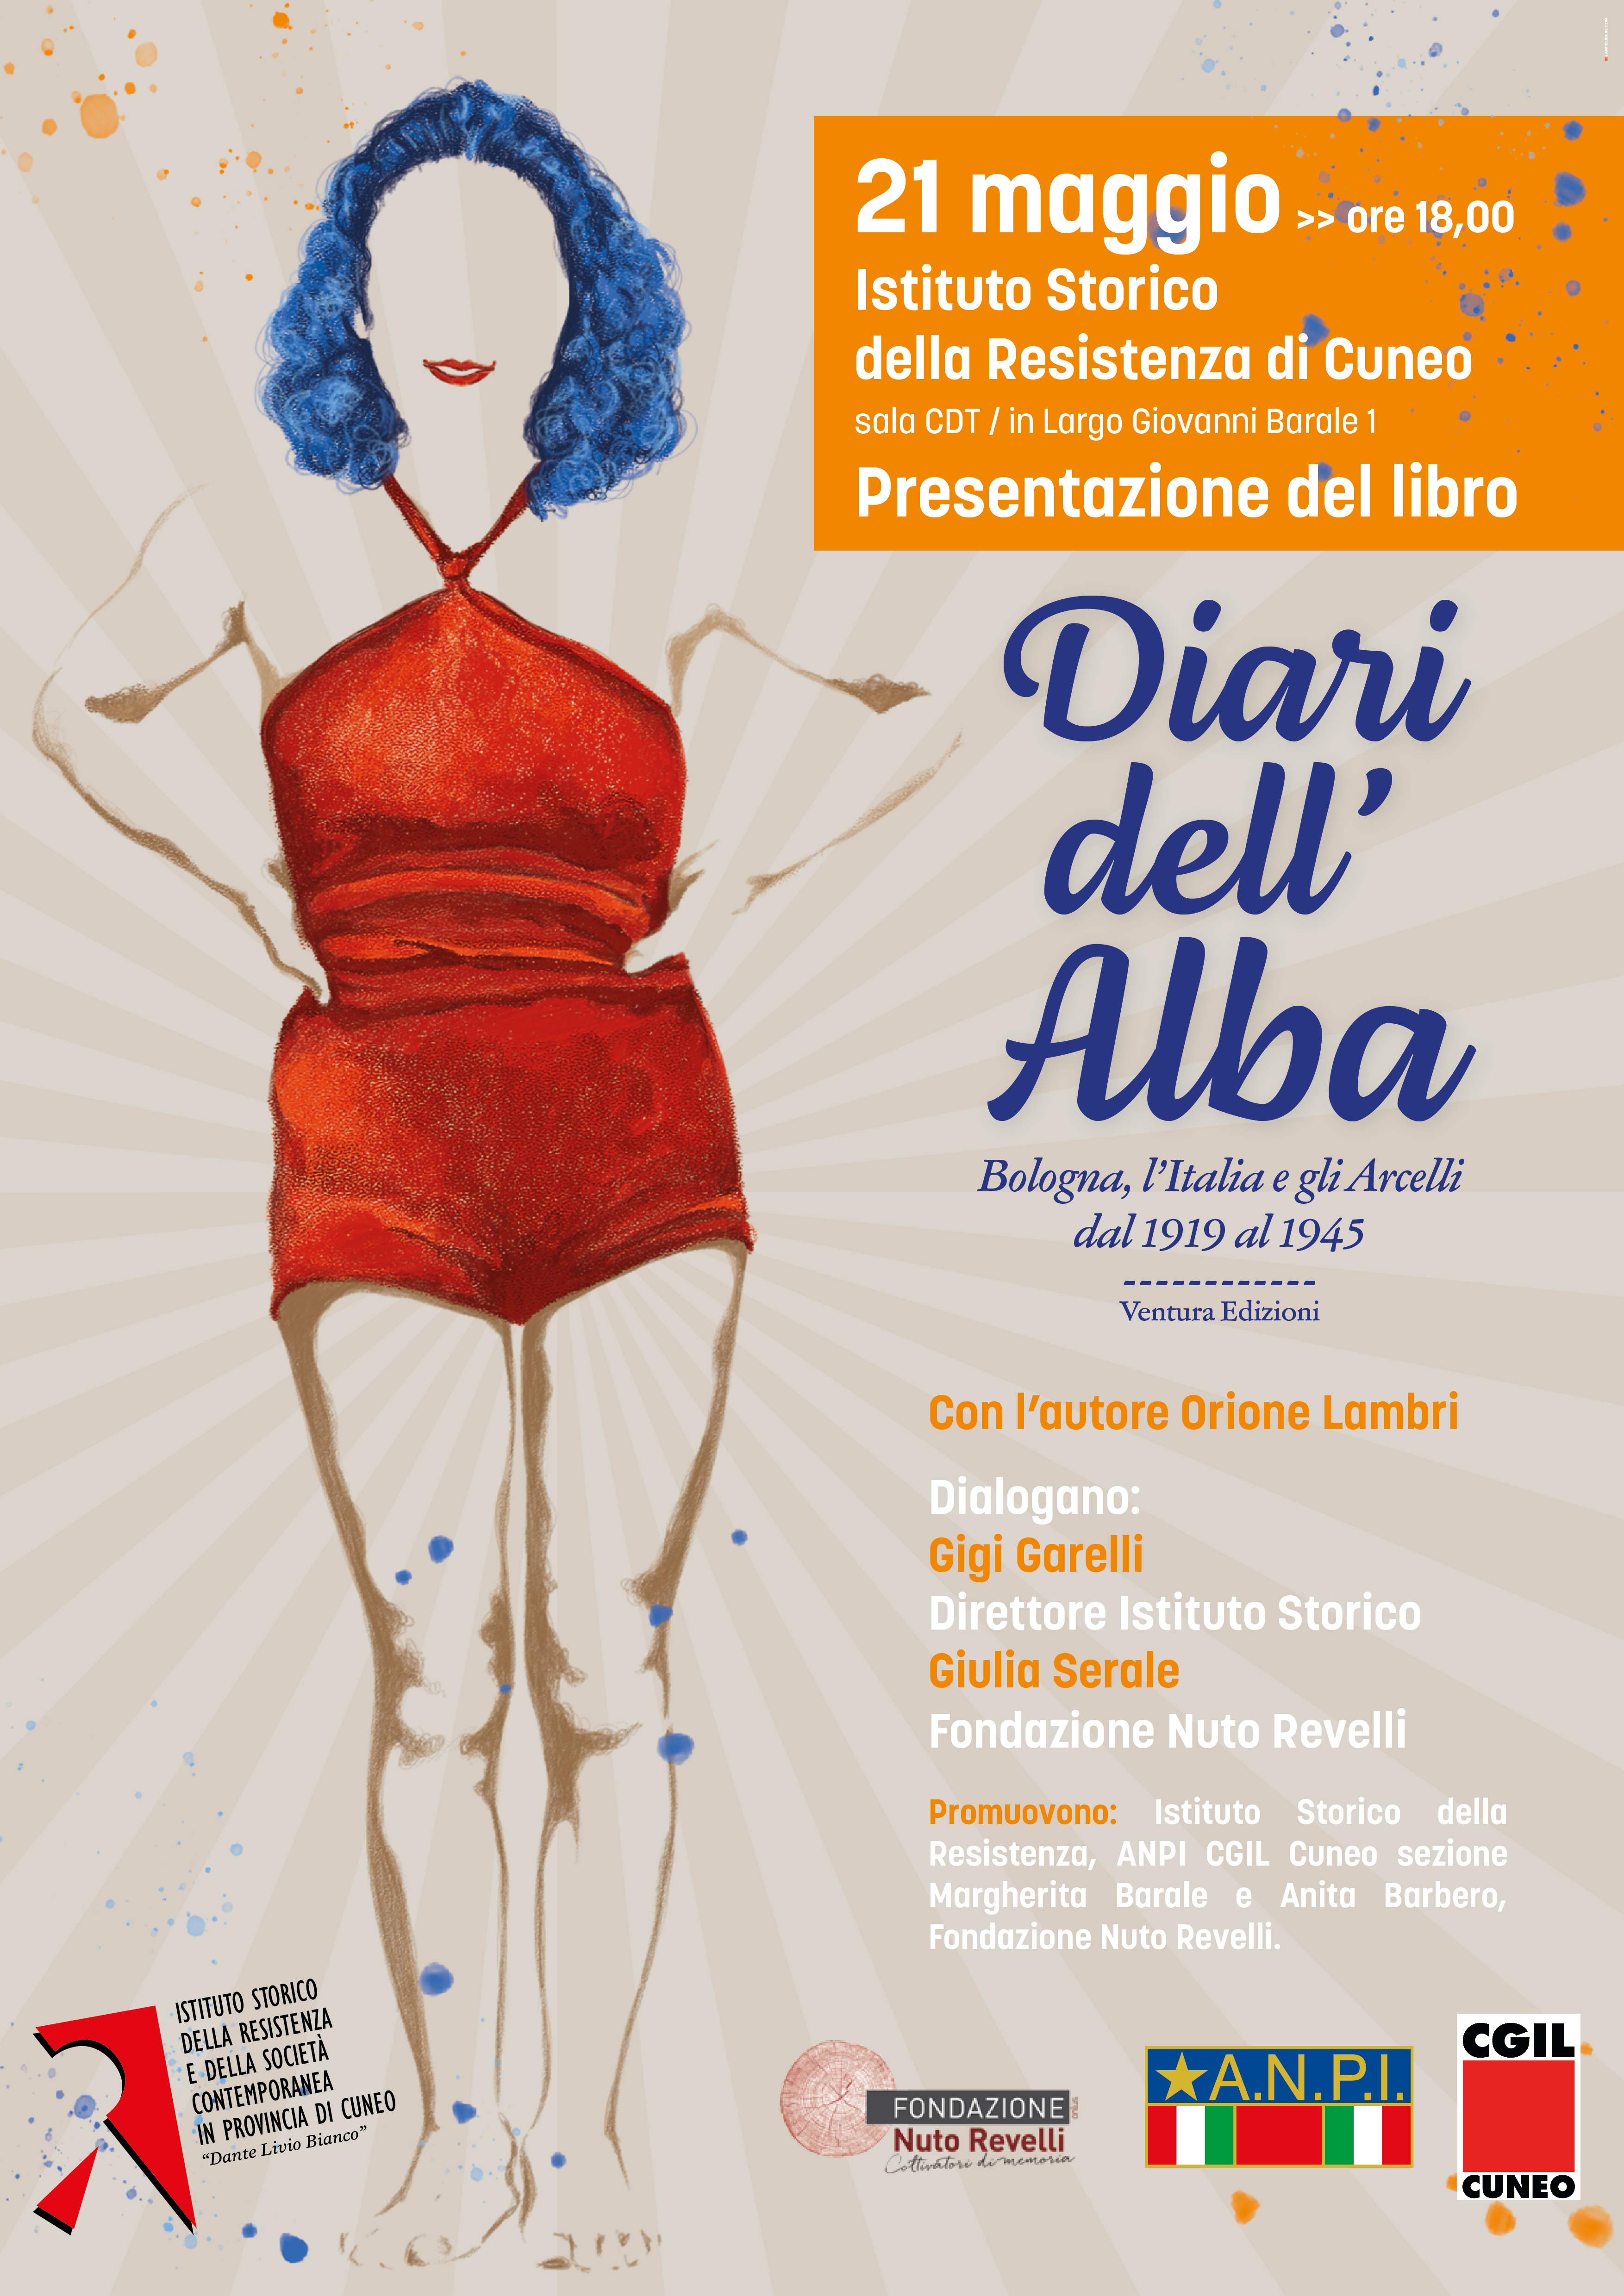 Presentazione del libro "DIARI DELL'ALBA" a Cuneo il 21 maggio